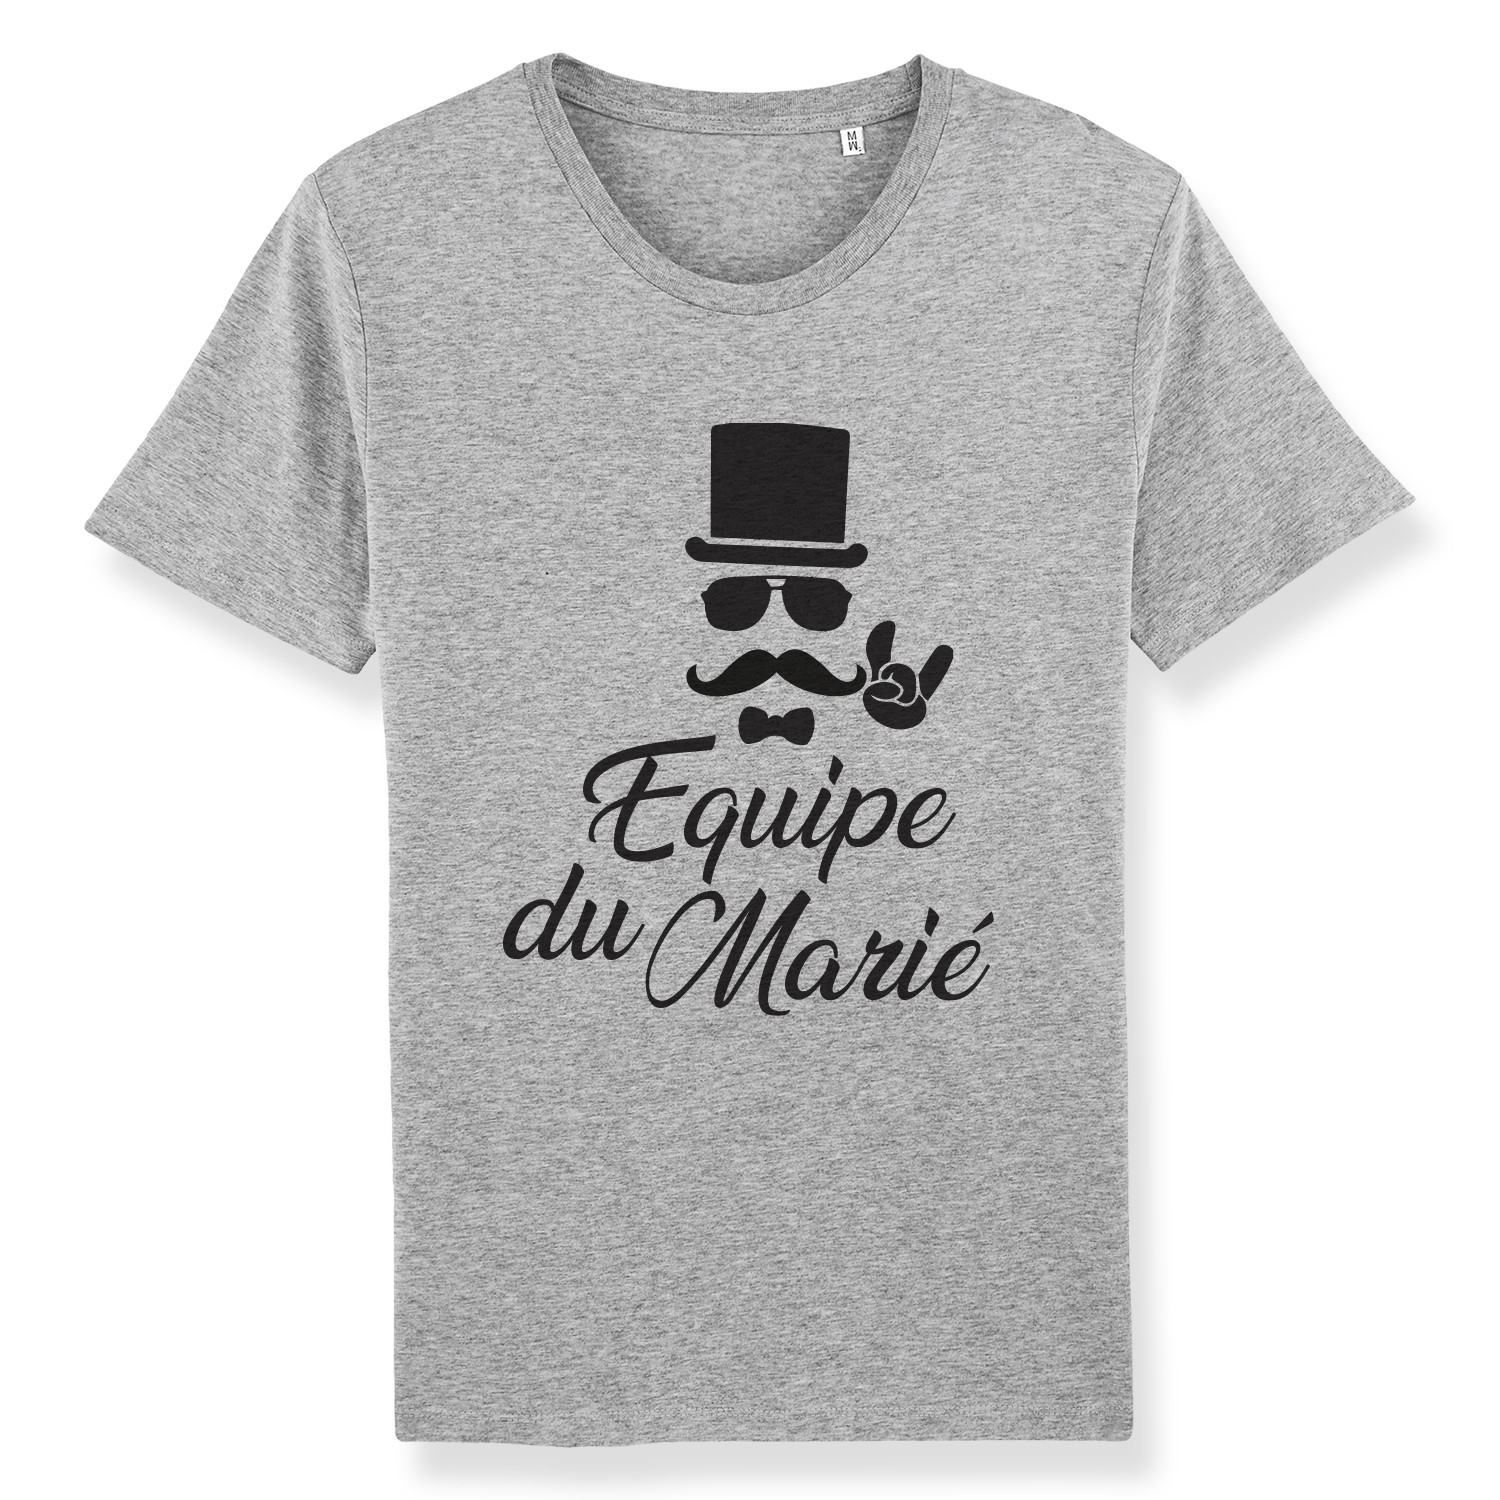 T-shirts EVG - Equipe du marié - Atelier du Quai